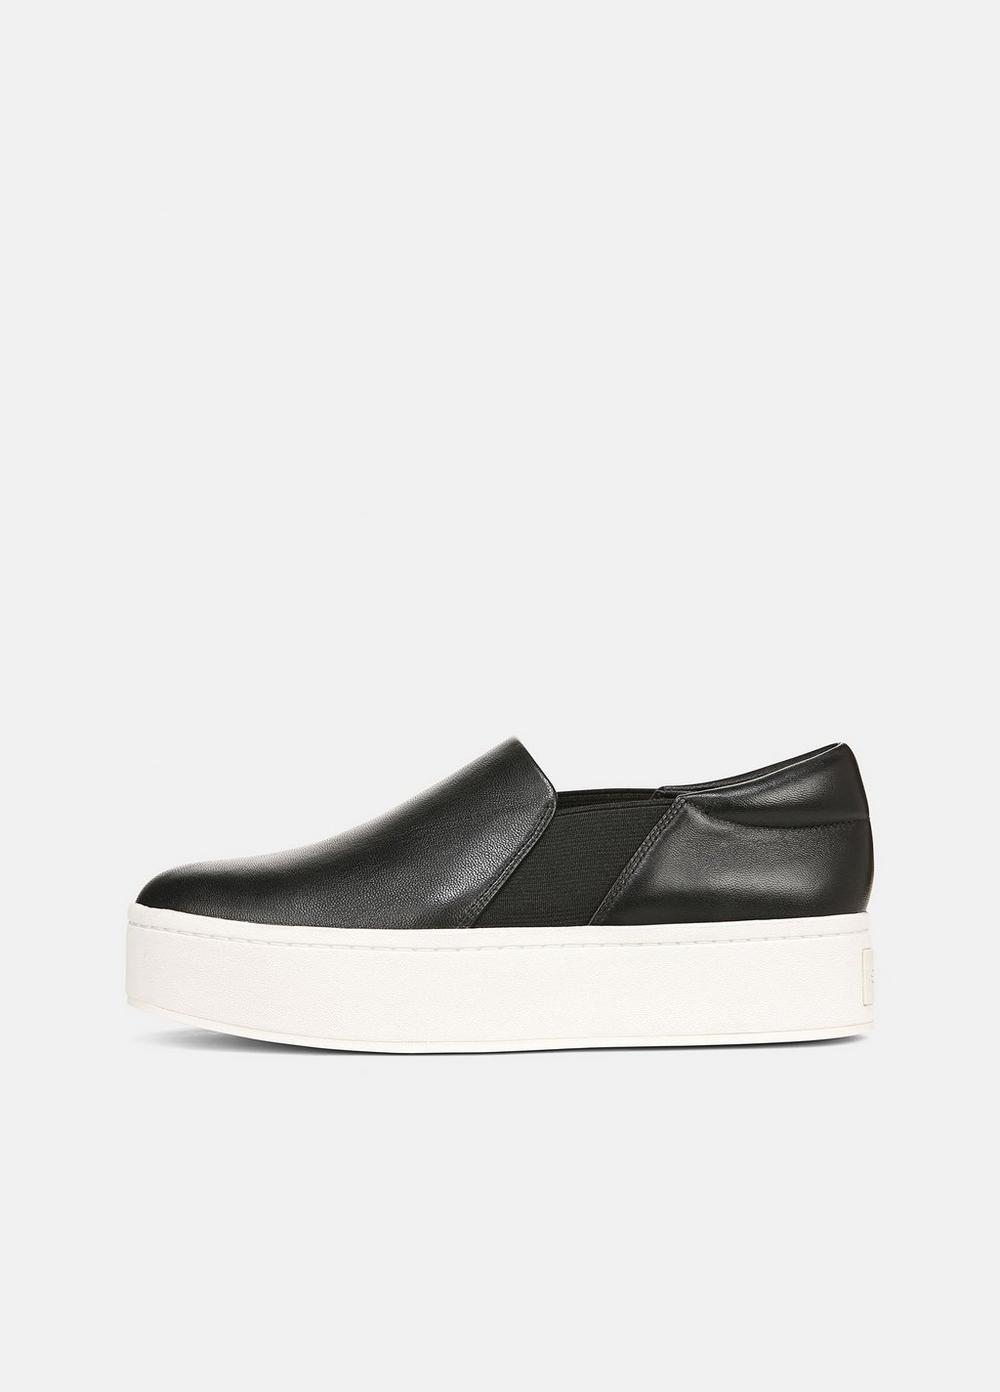 Warren Leather Sneaker, Black, Size 5.5 Vince